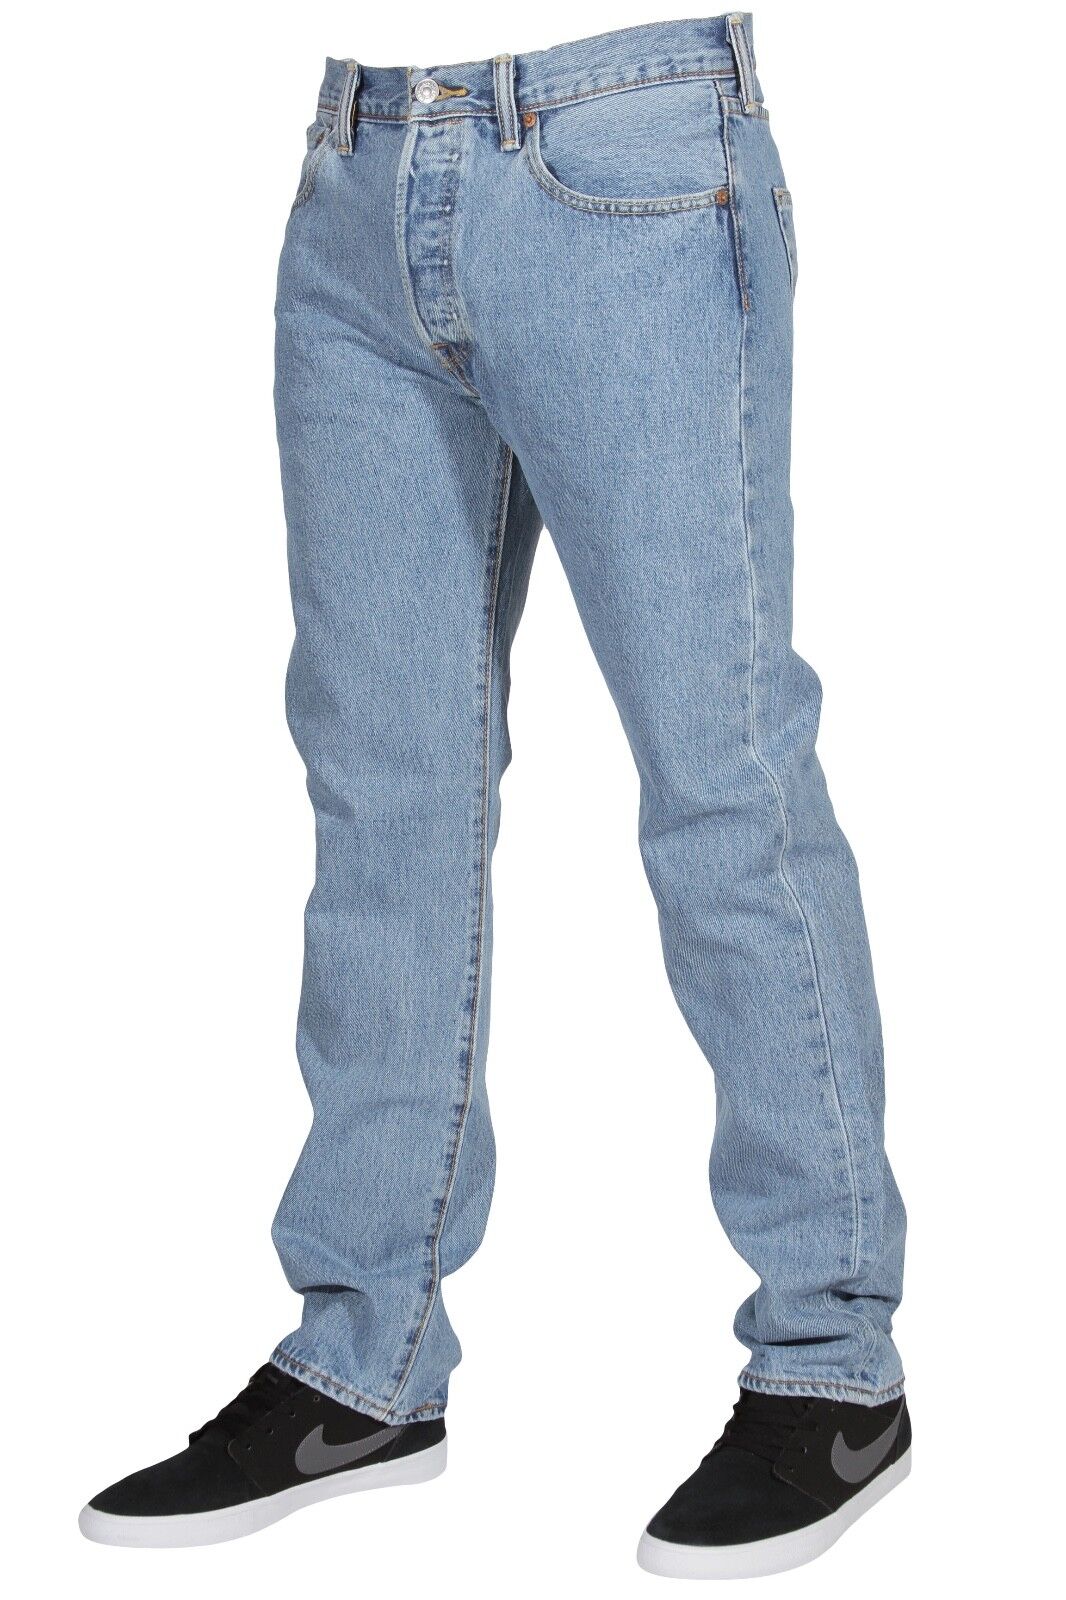 Levi's Men's 501 Original Fit Jeans Straight Leg Button